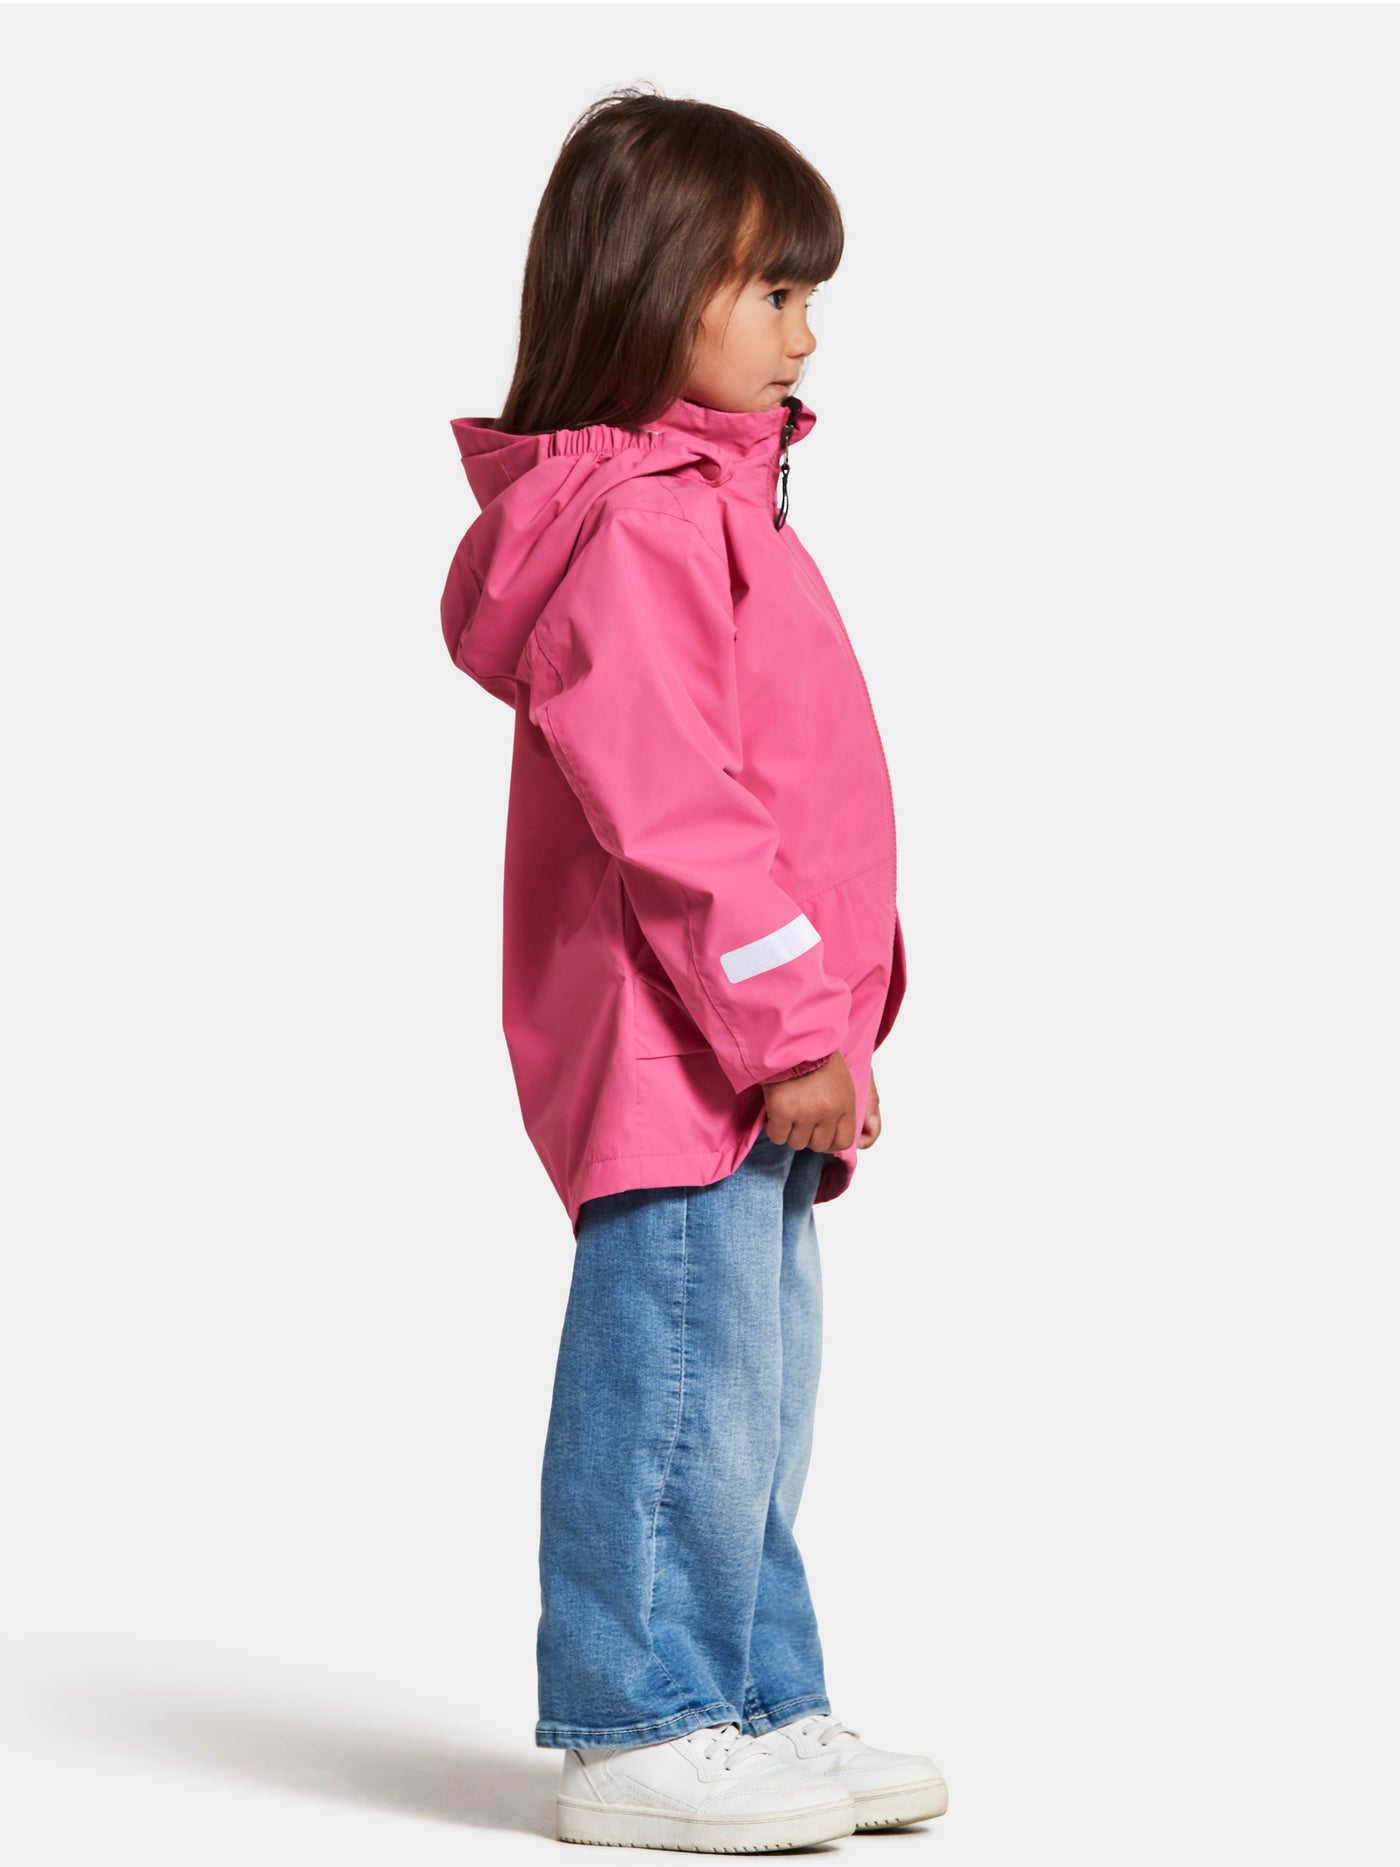 Tytön päällä Didriksonsin Norma lasten pinkki takki kuvattuna sivusta